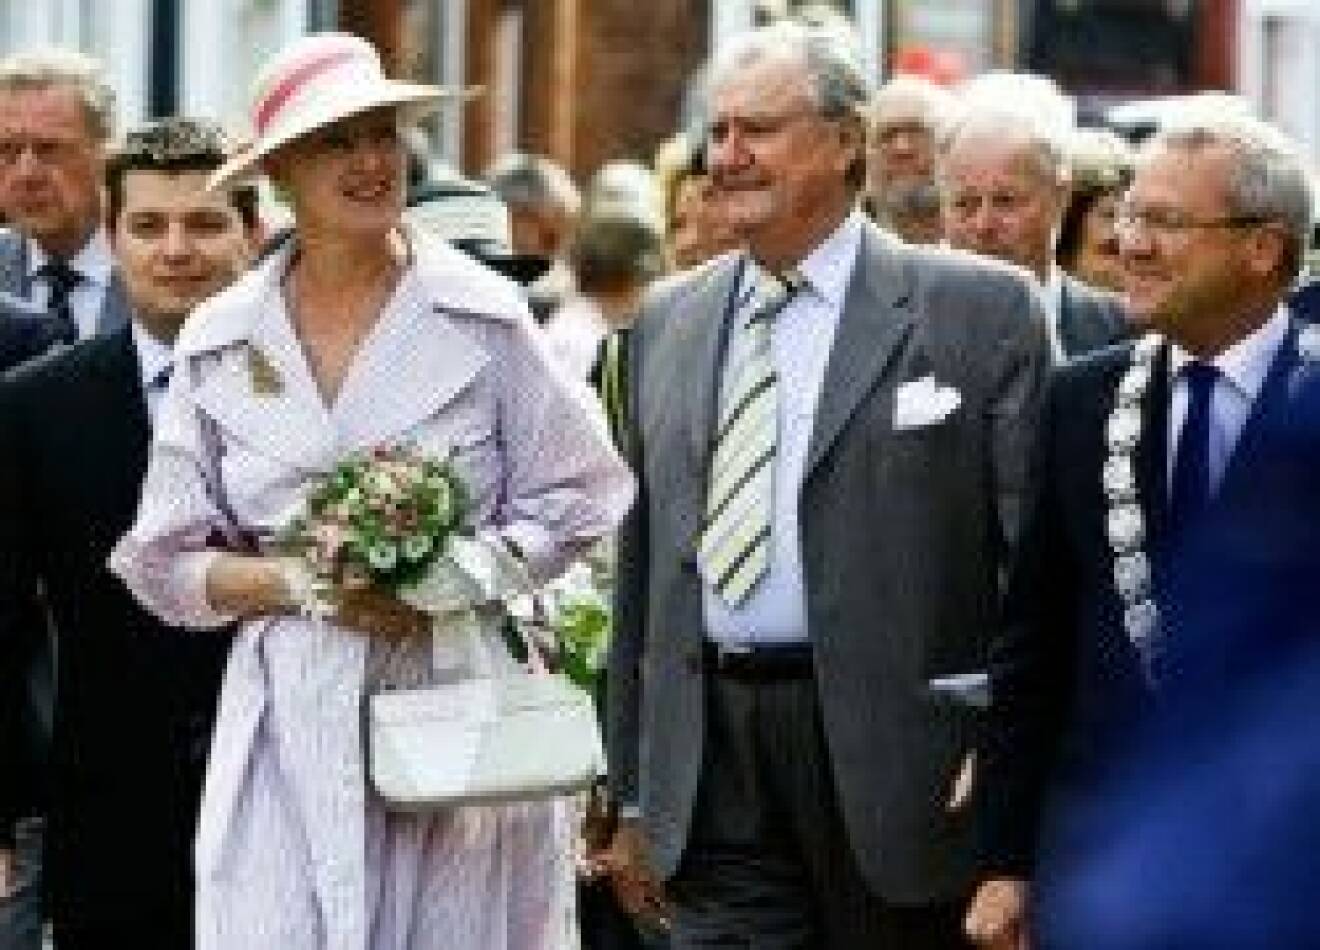 Drottning Margrethe och prins Henrik.